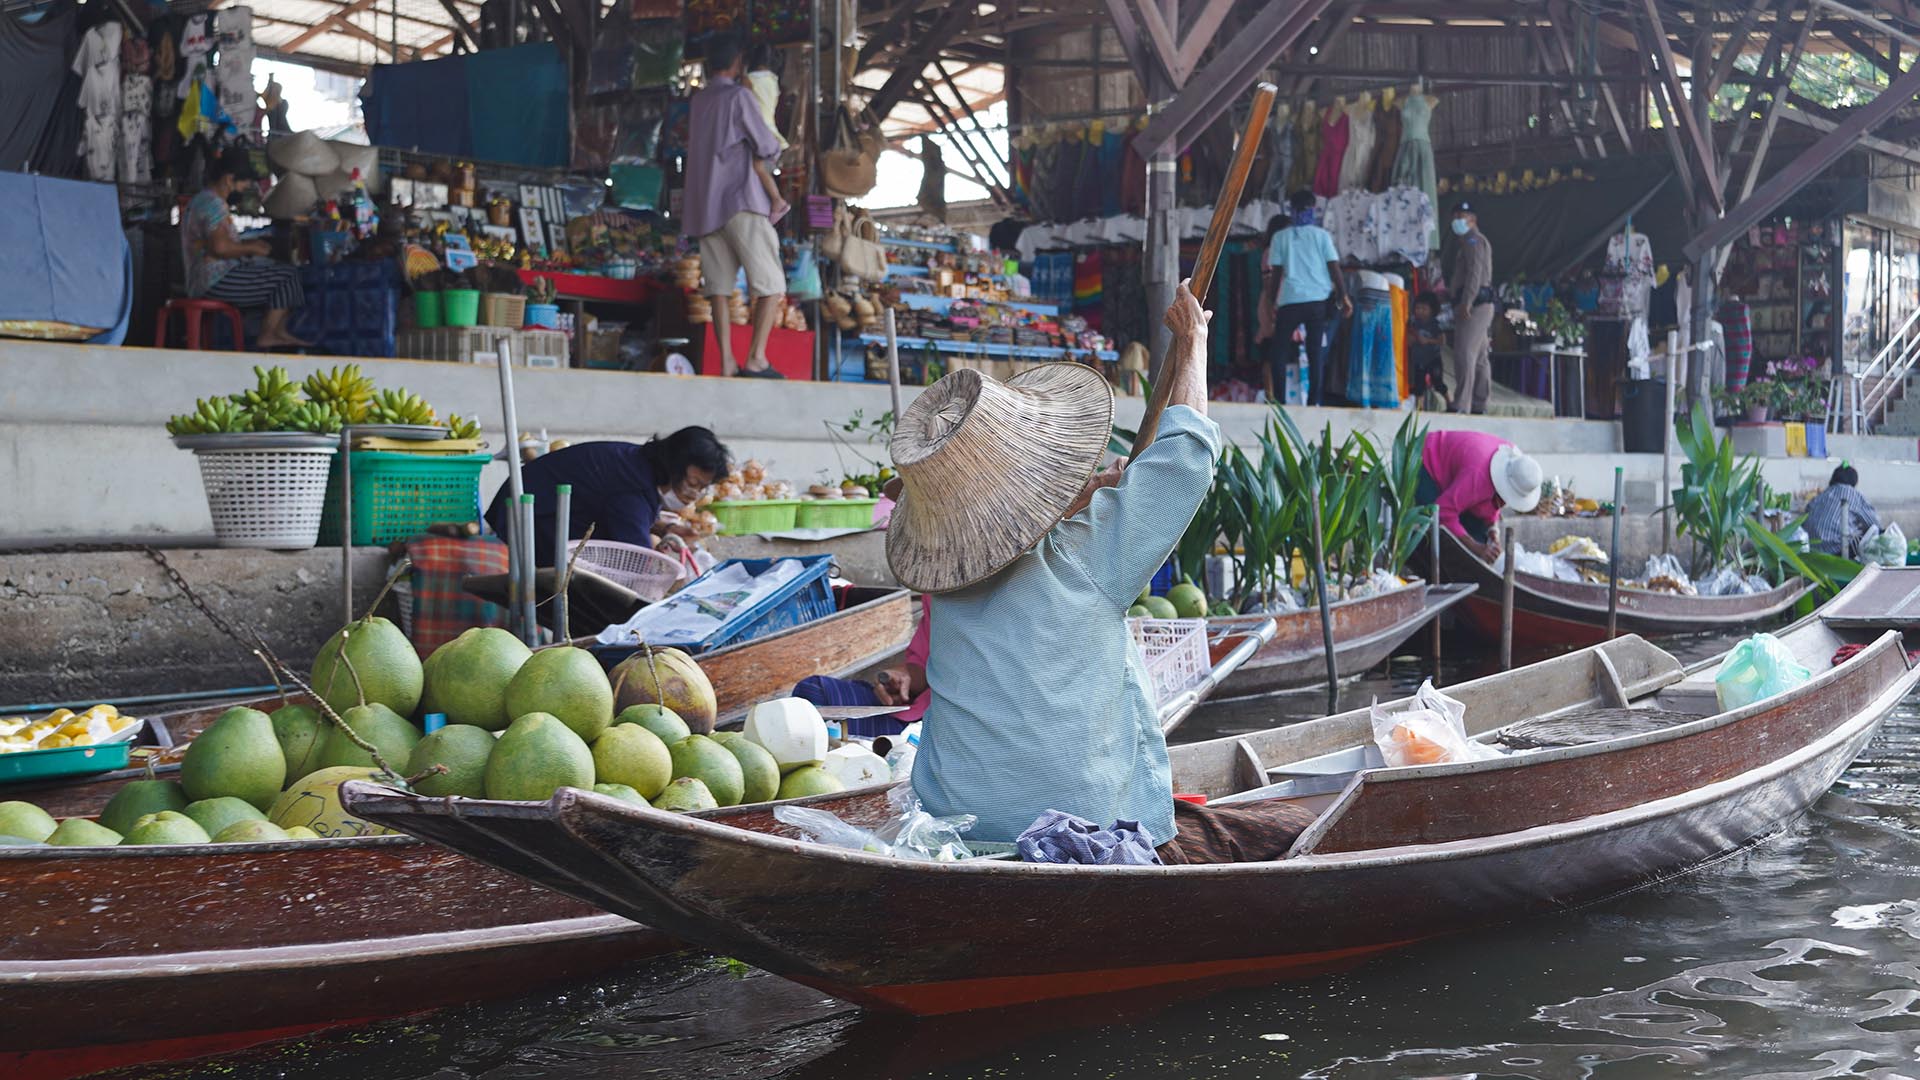 Paddelboot am Damnoen Saduak Floating Market